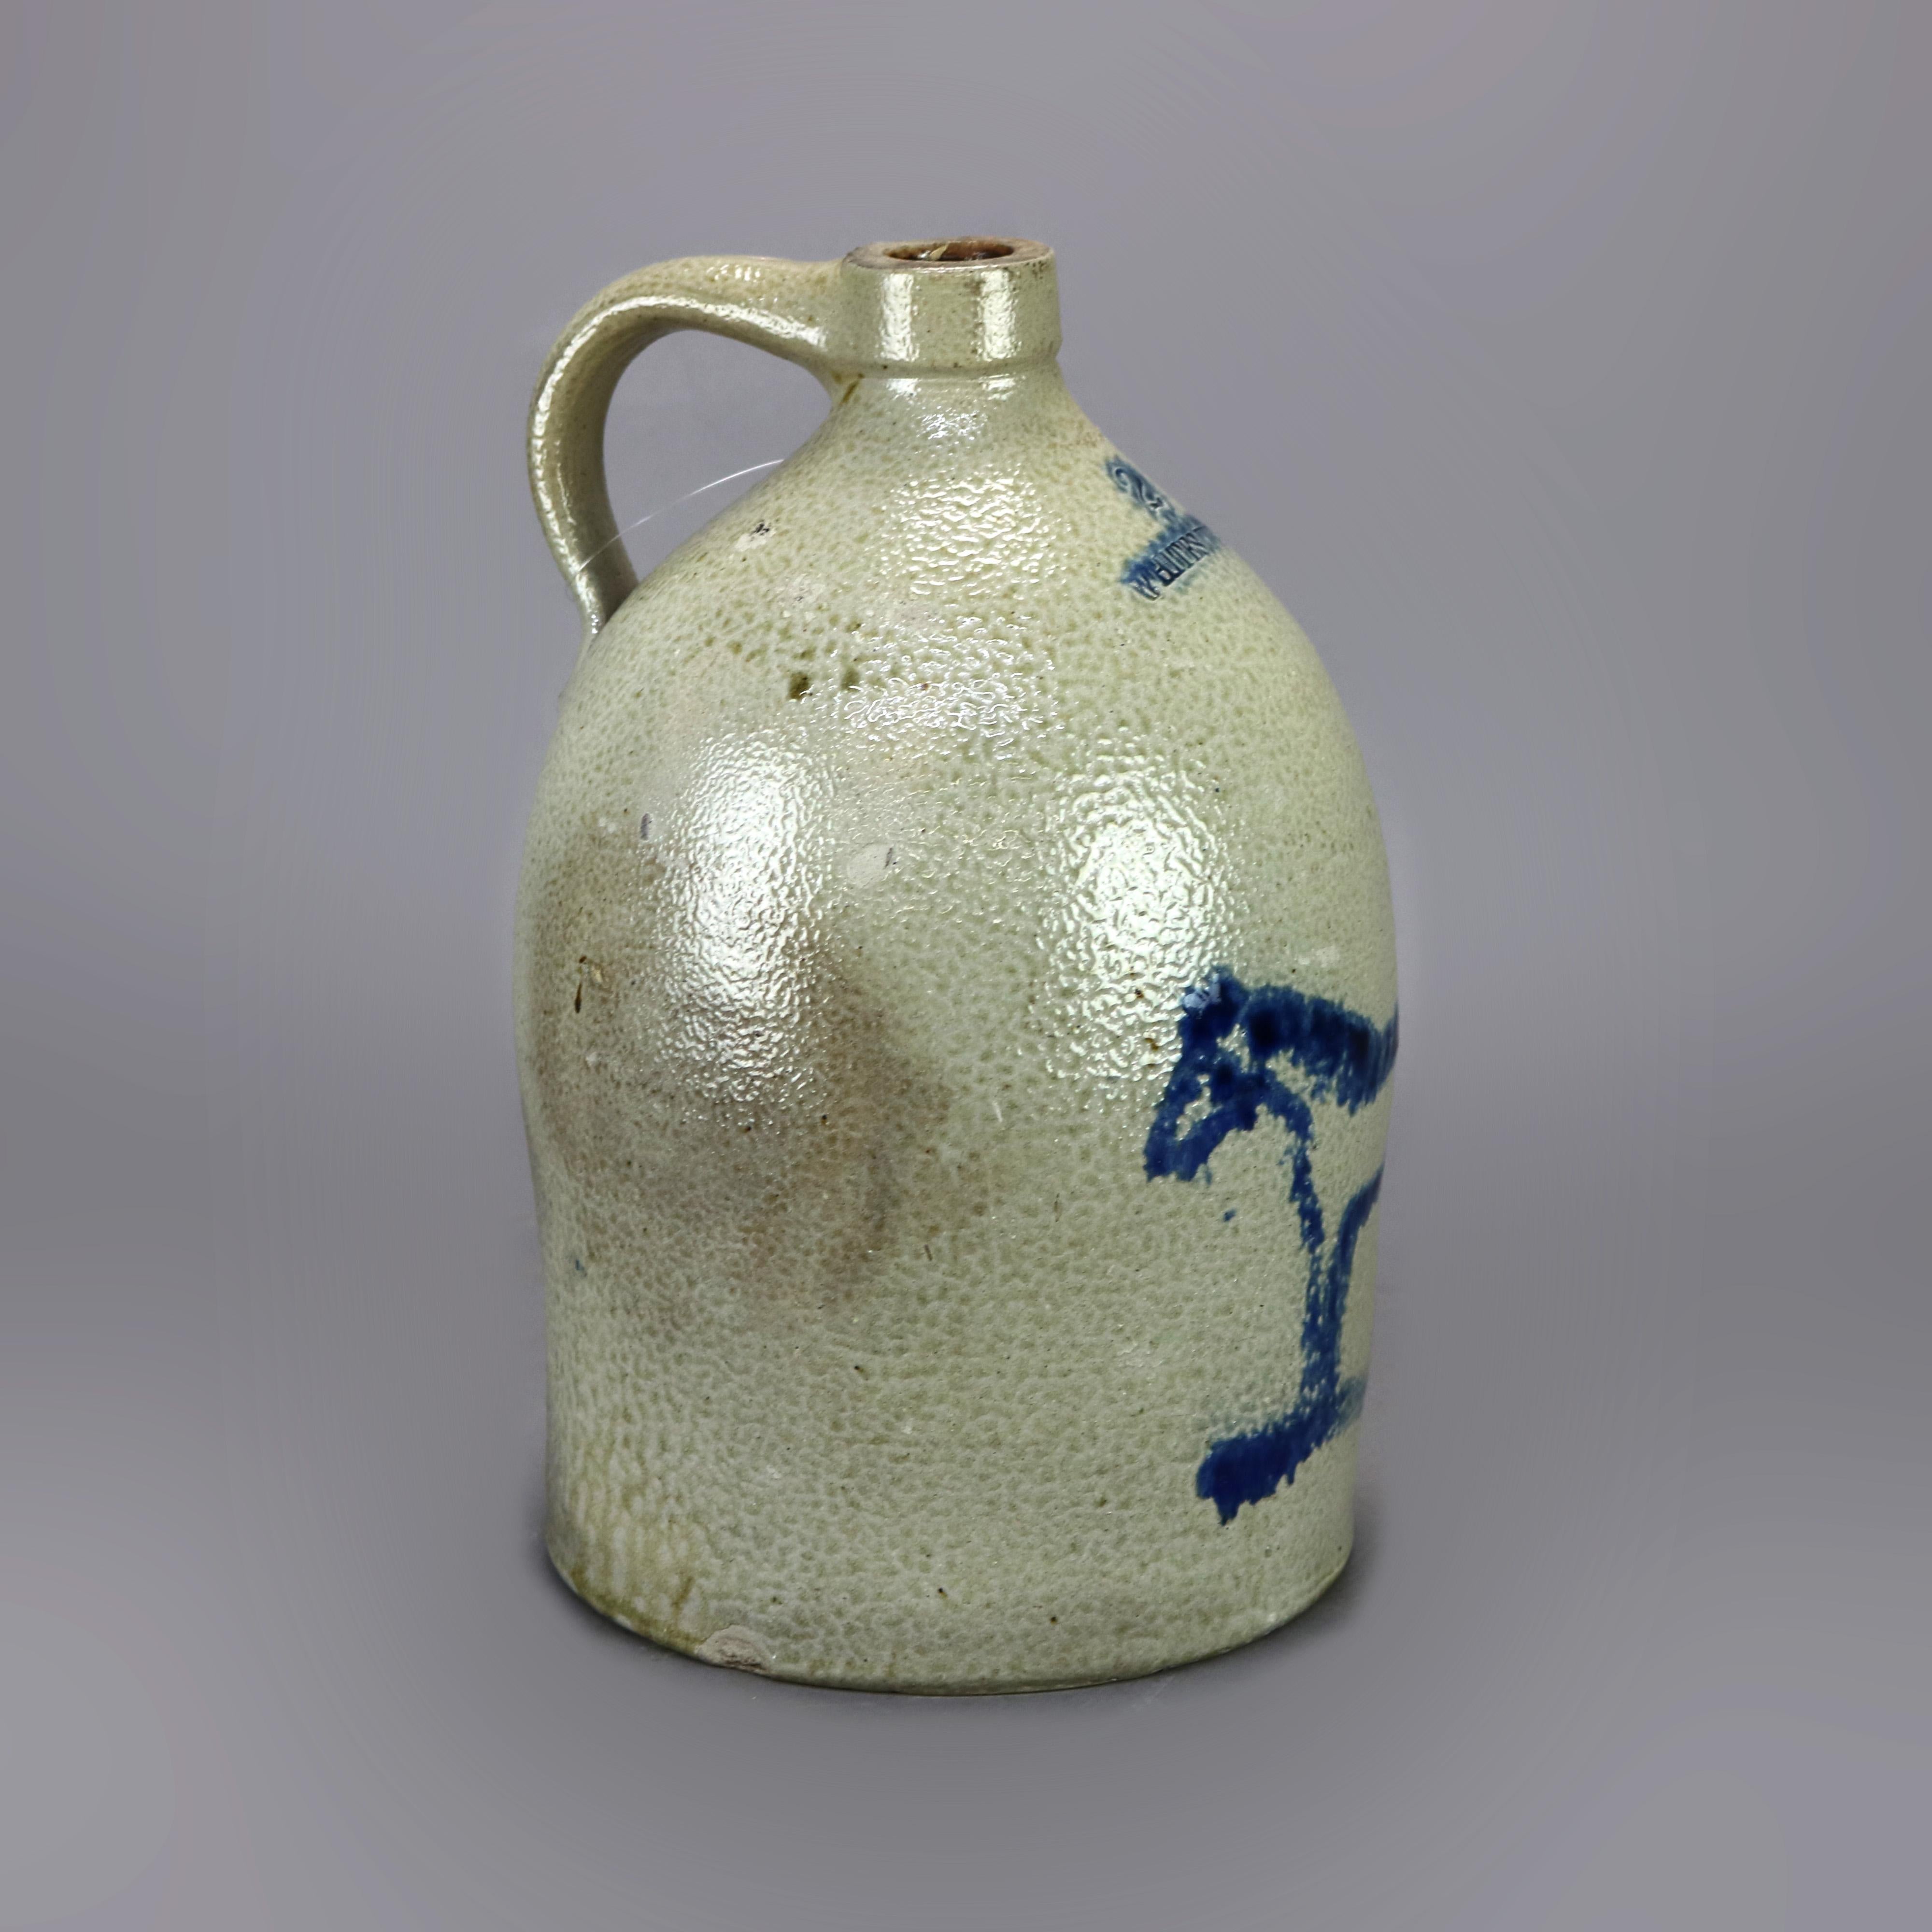 Rare Antique Whites Utica Salt Glaze Stoneware Jug, Blue Decorated Horse, 19th C 2